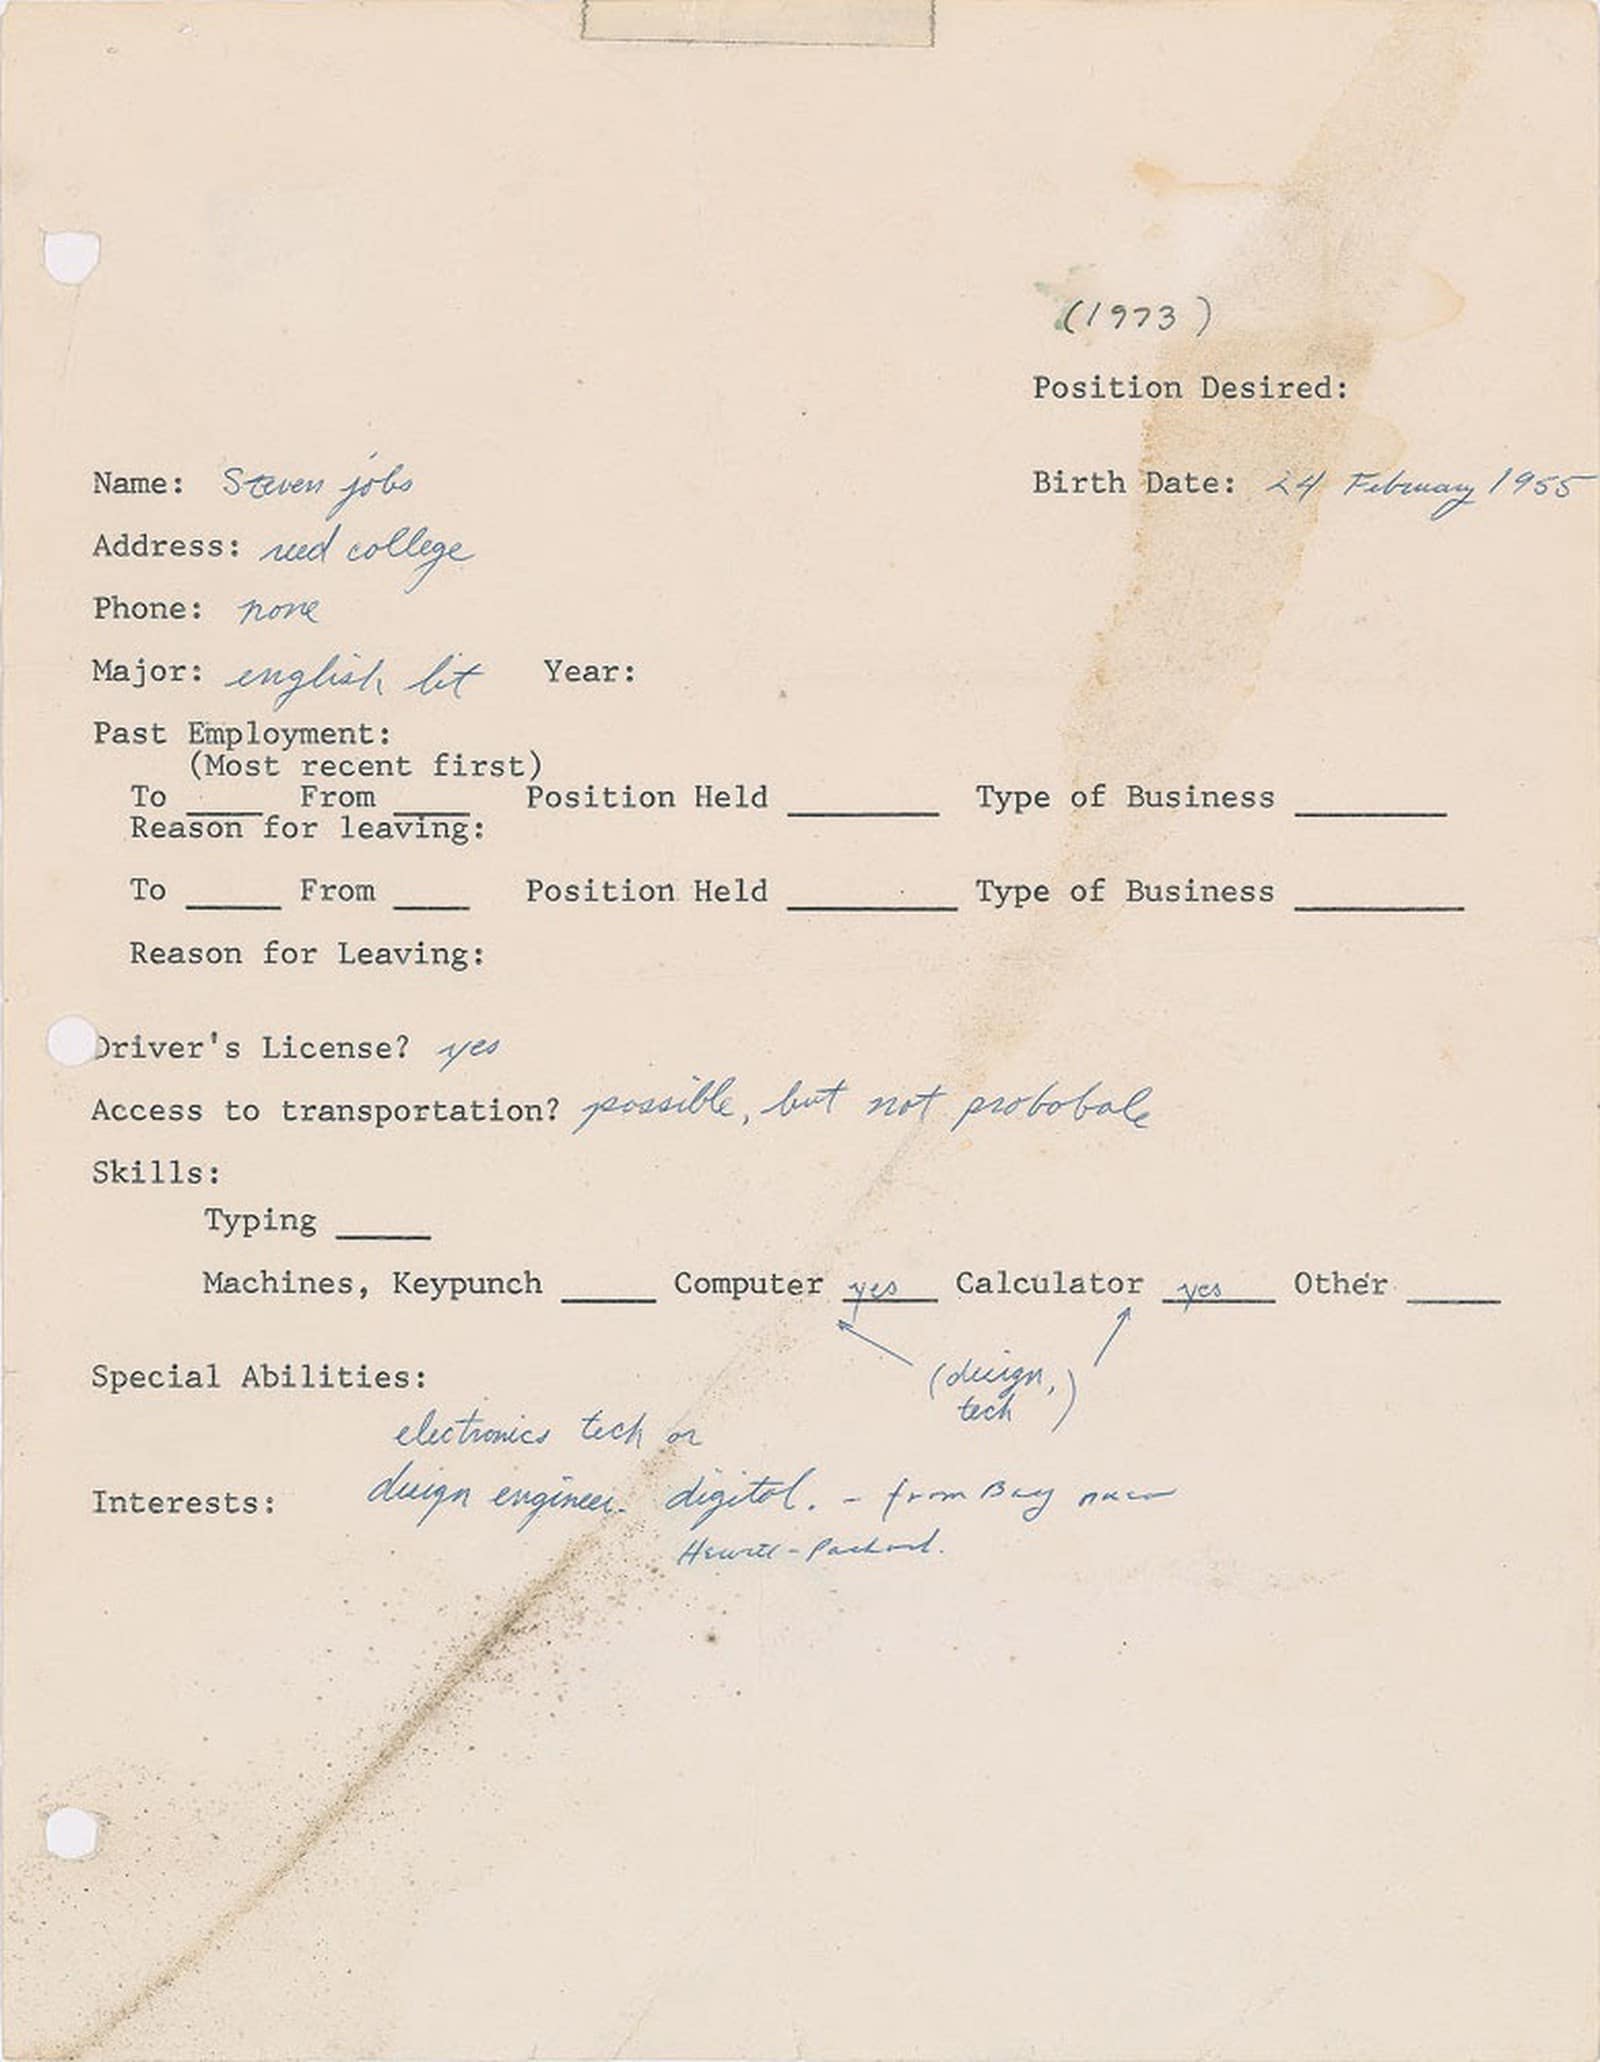 Formulário de emprego preenchido por Steve Jobs em 1973